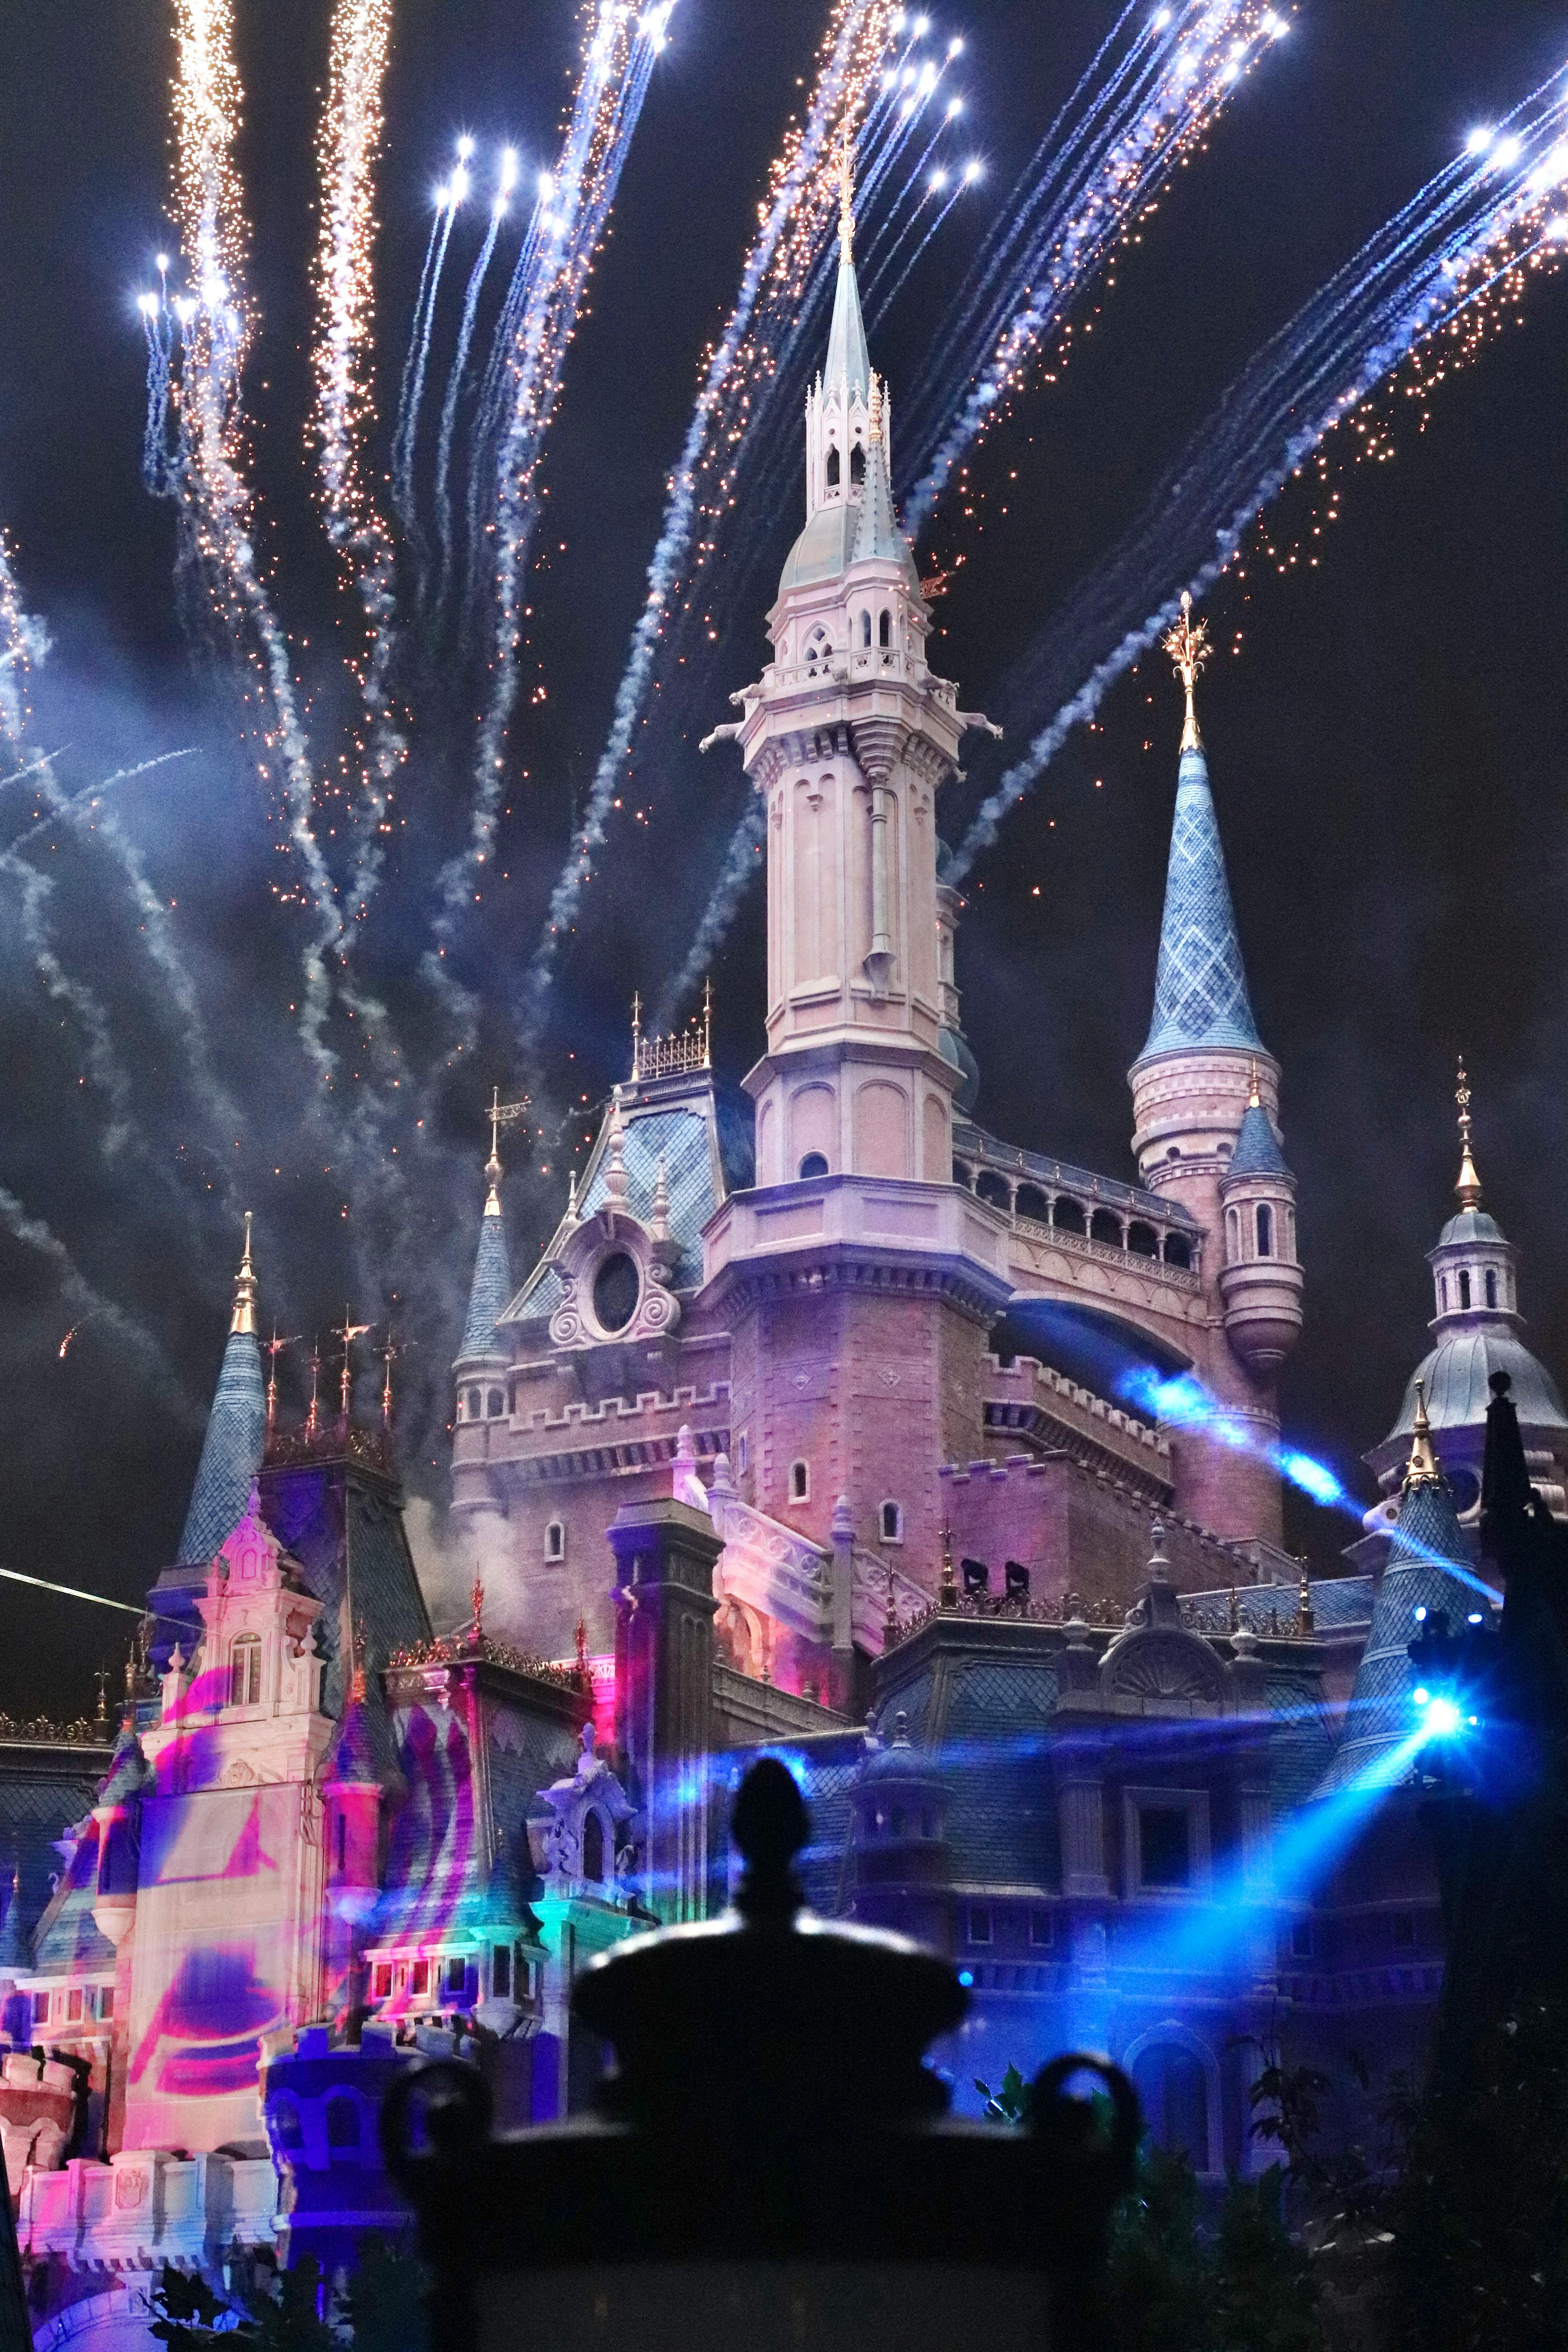 Disney Castle Photos, Download The BEST Free Disney Castle Stock Photos &  HD Images